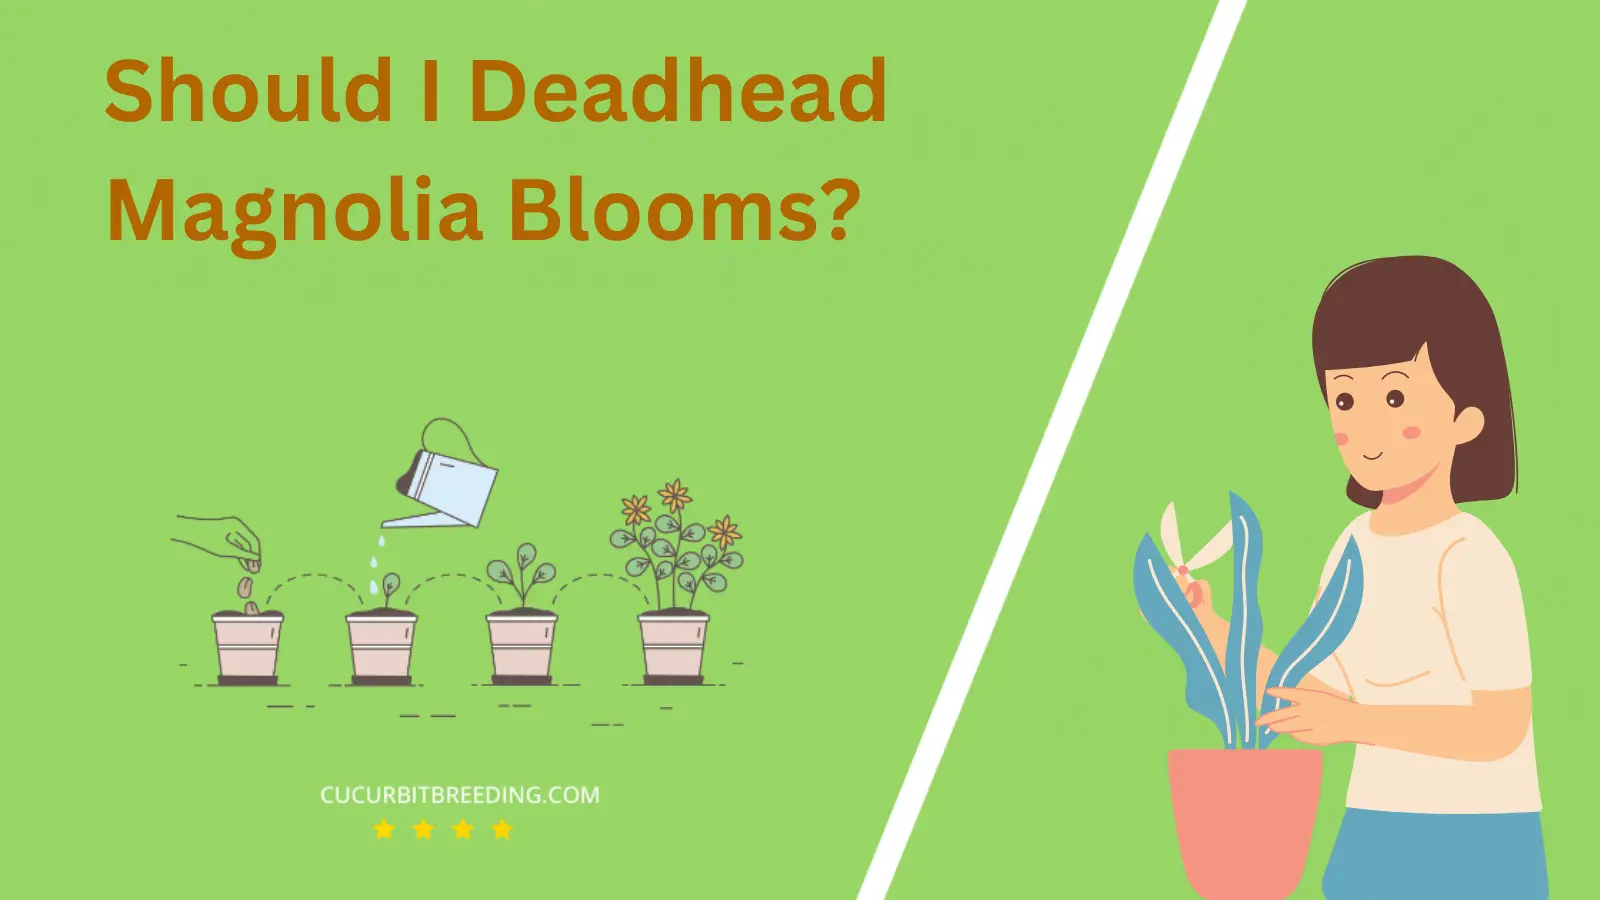 Should I Deadhead Magnolia Blooms?